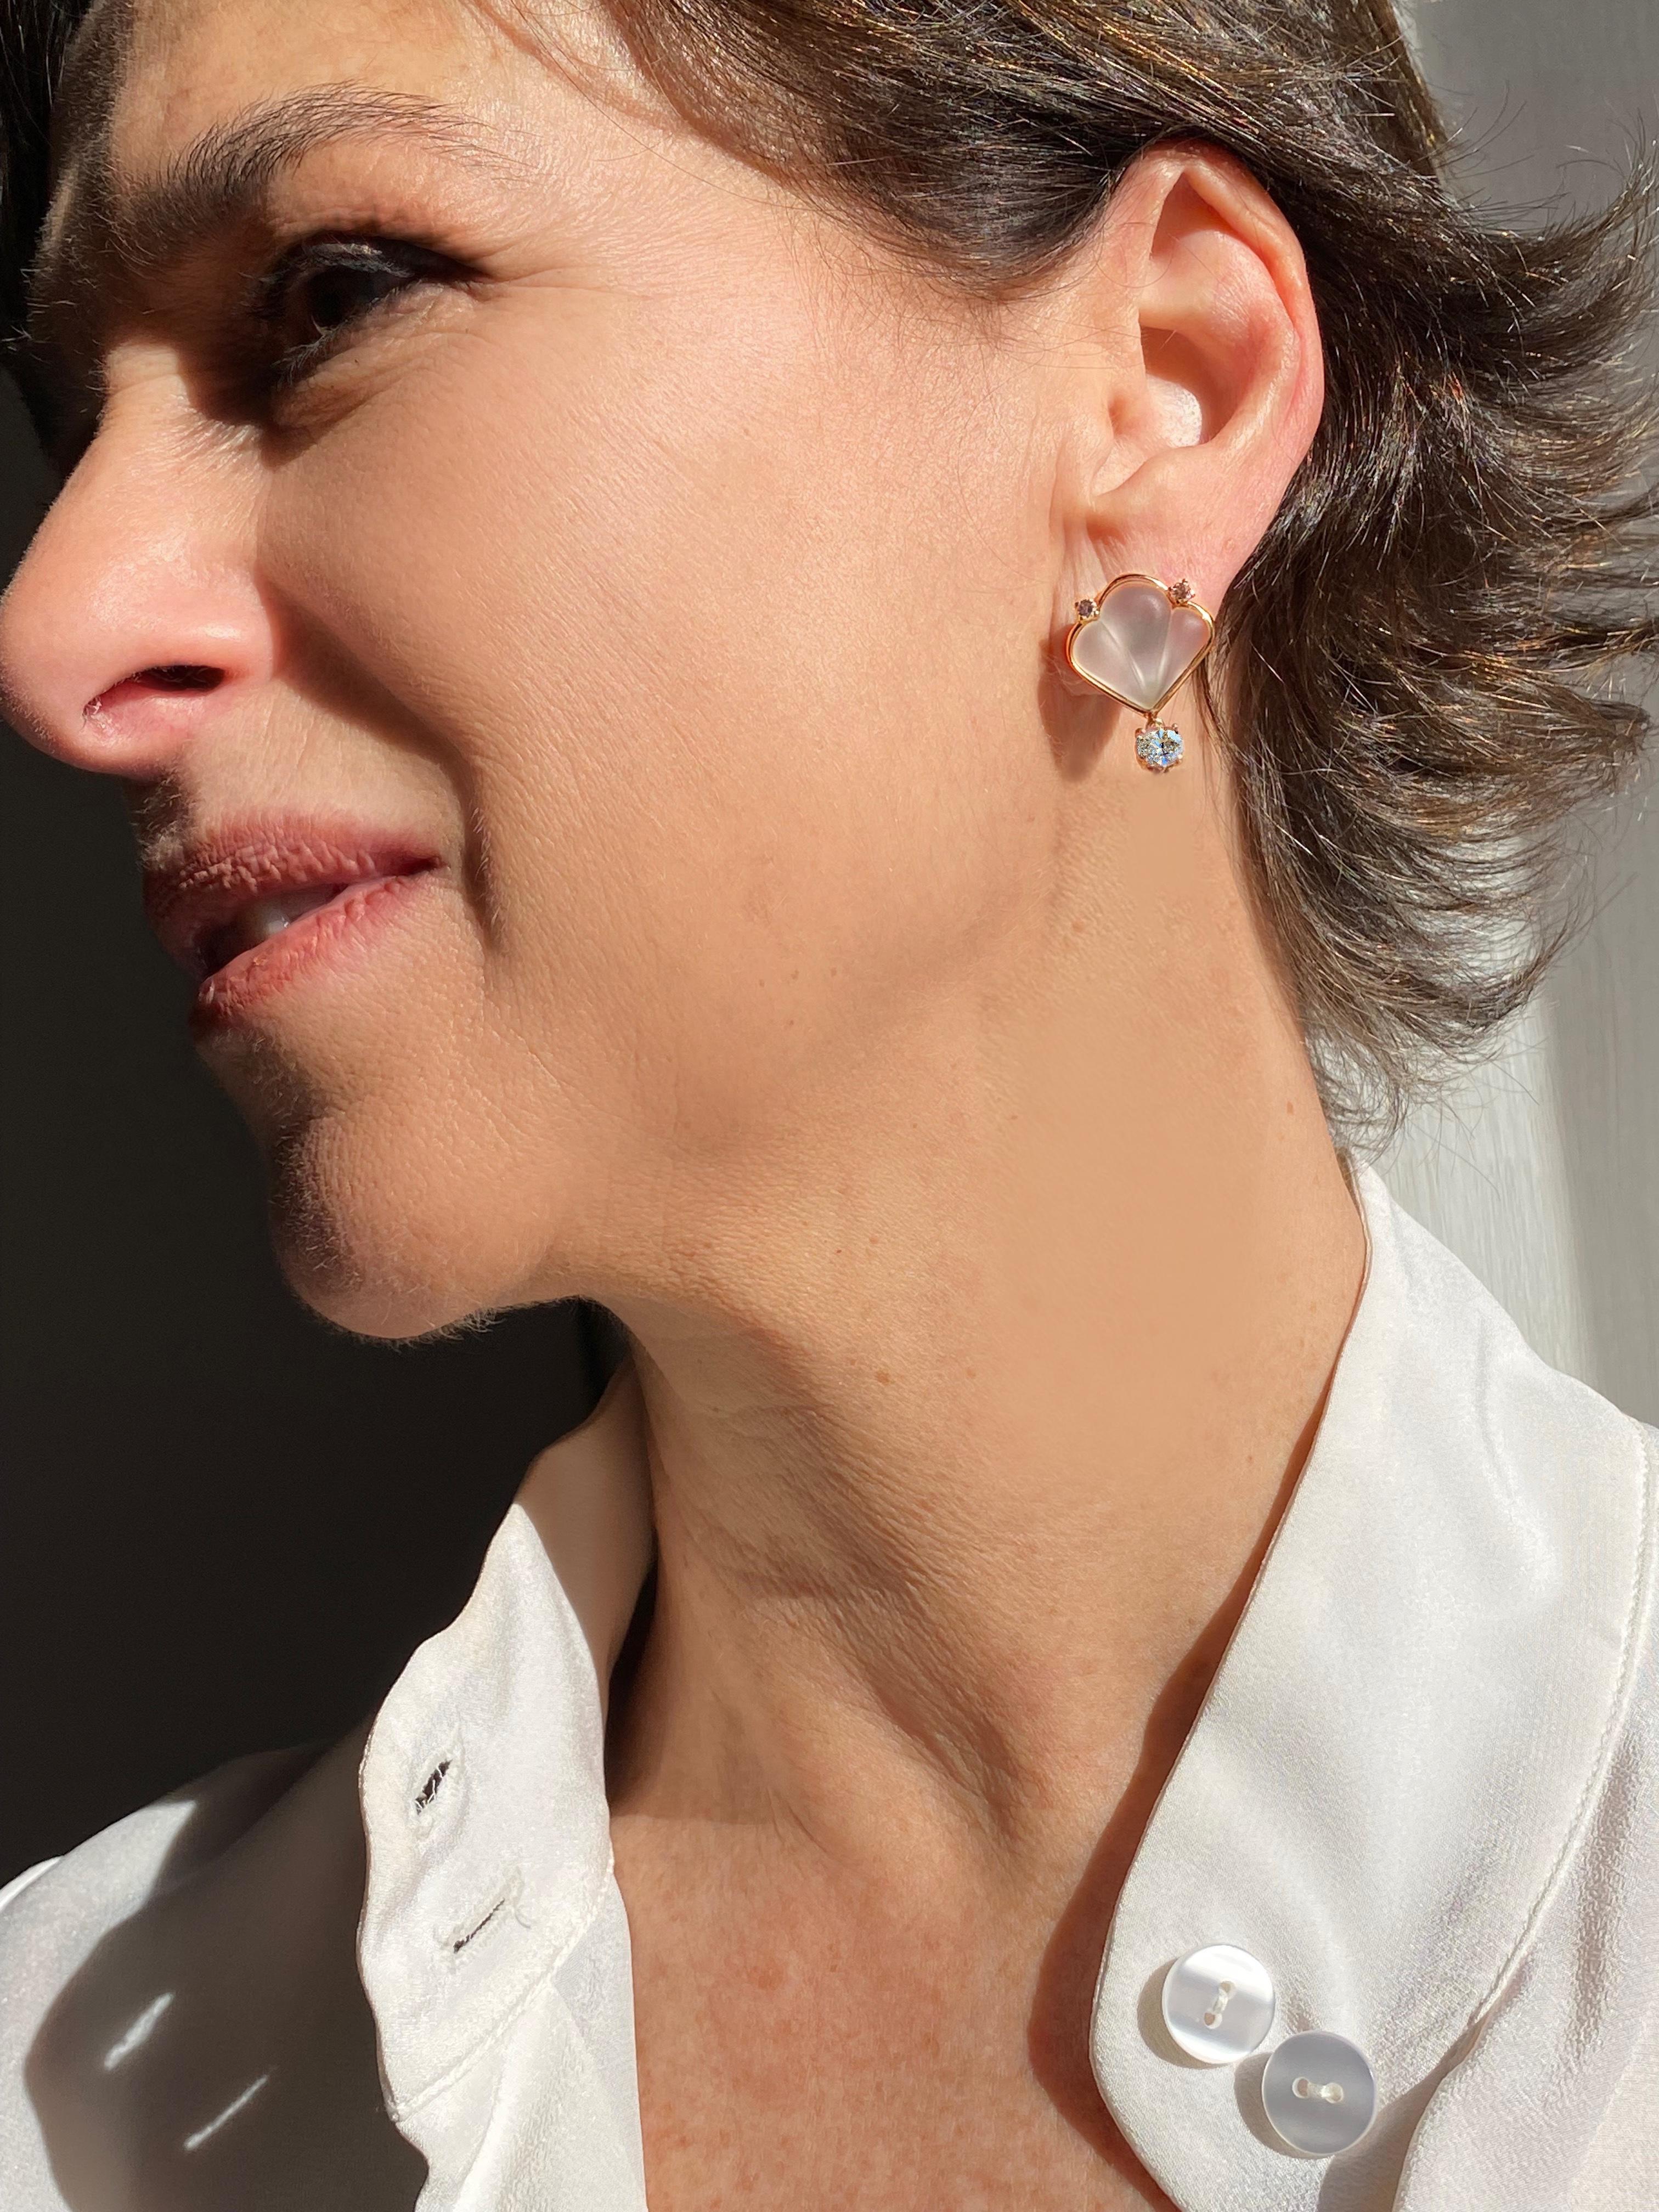 Rossella Ugolini Deco Collection, boucles d'oreilles de style déco faites à la main en or jaune 18 carats 0,12 carats de diamants blancs et de cristal de roche.
La version des boucles d'oreilles en cristal de roche et or jaune offre un style moderne